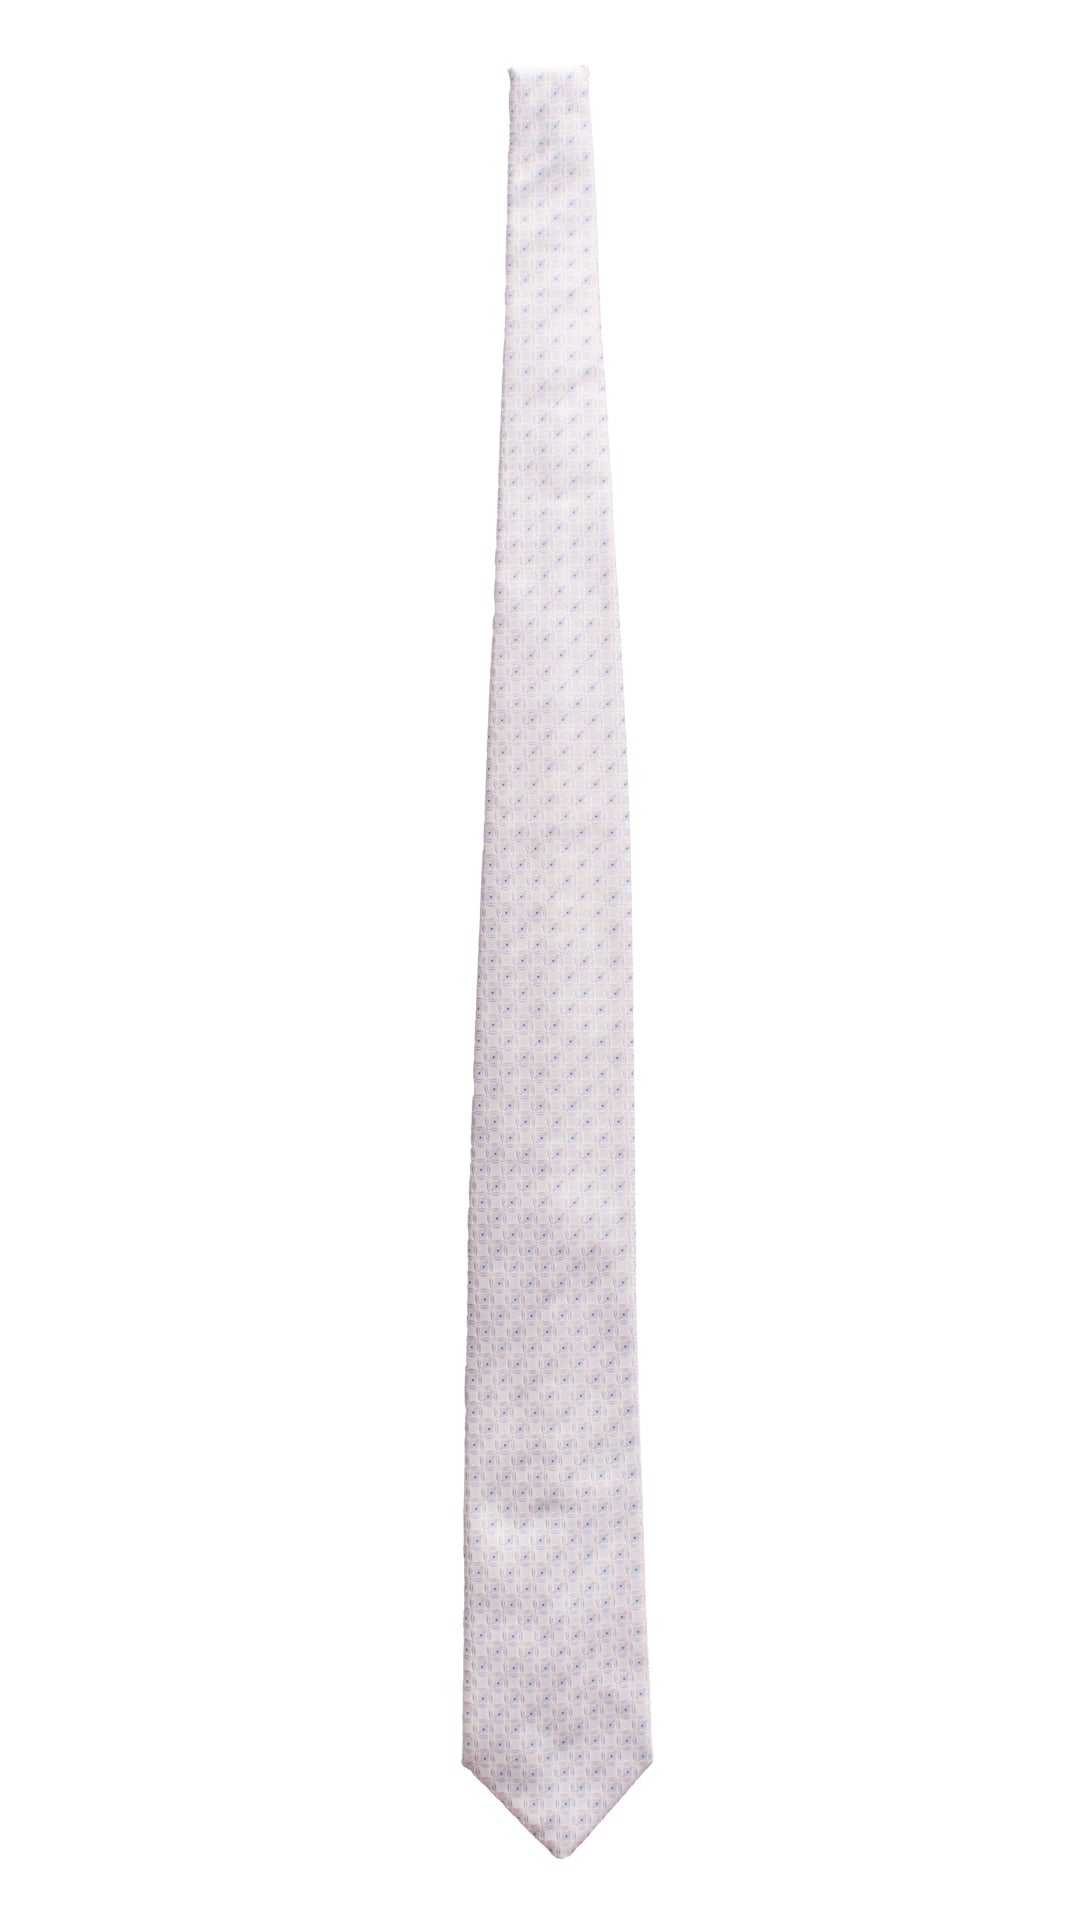 Cravatta da Cerimonia di Seta Color Ghiaccio Fantasia Bianca Bluette Made in Italy Graffeo Cravatte Intera